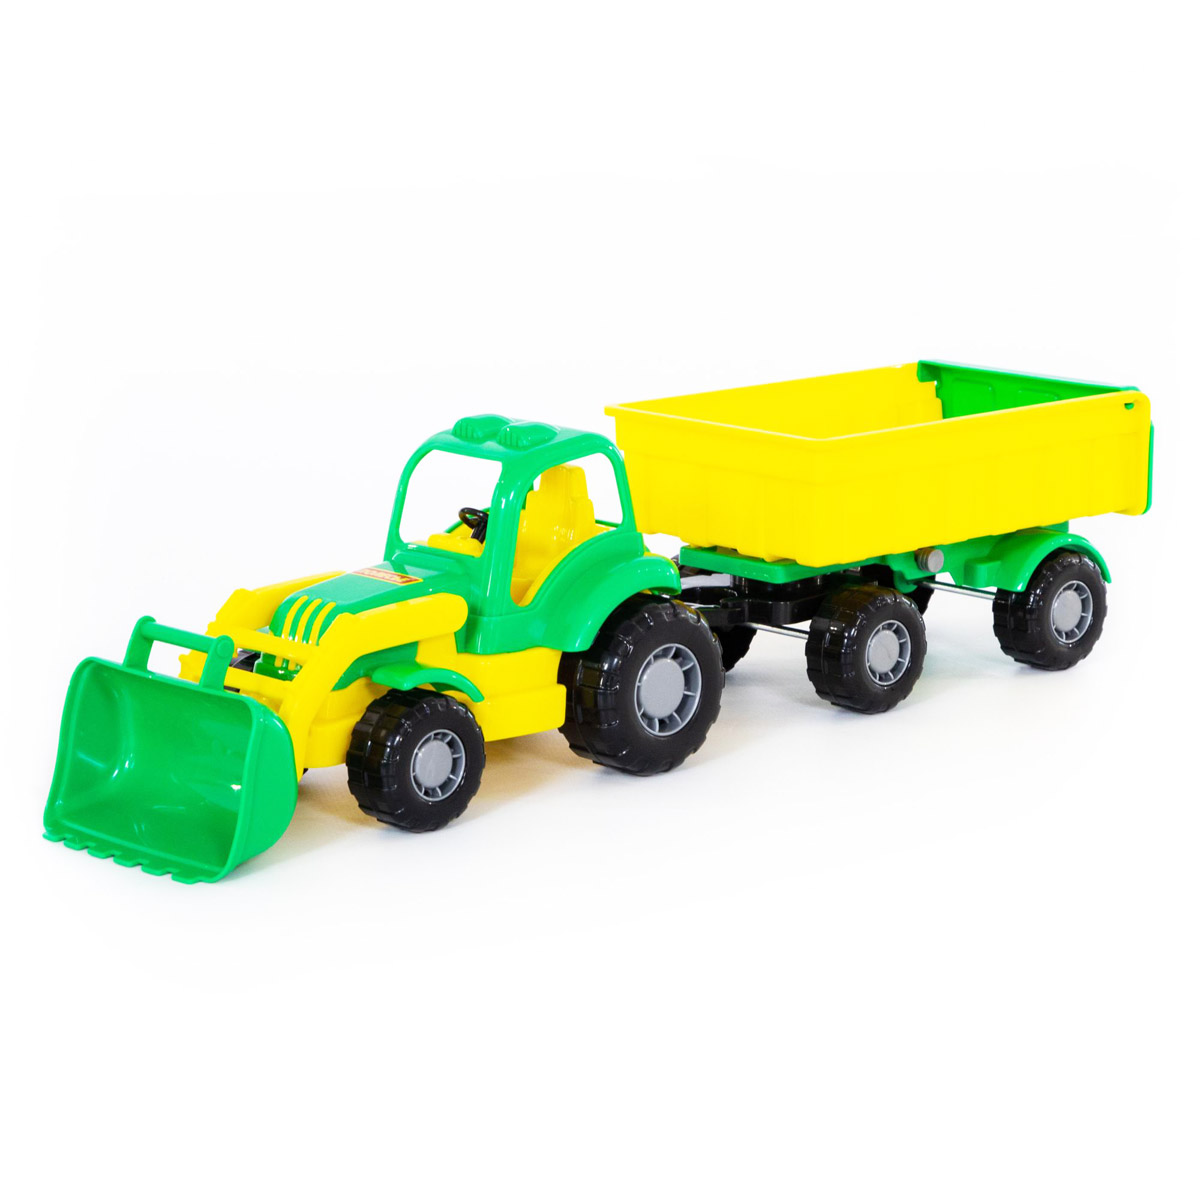 Іграшковий тракторт з причепом № 1 та ковшем 'Здоровань'